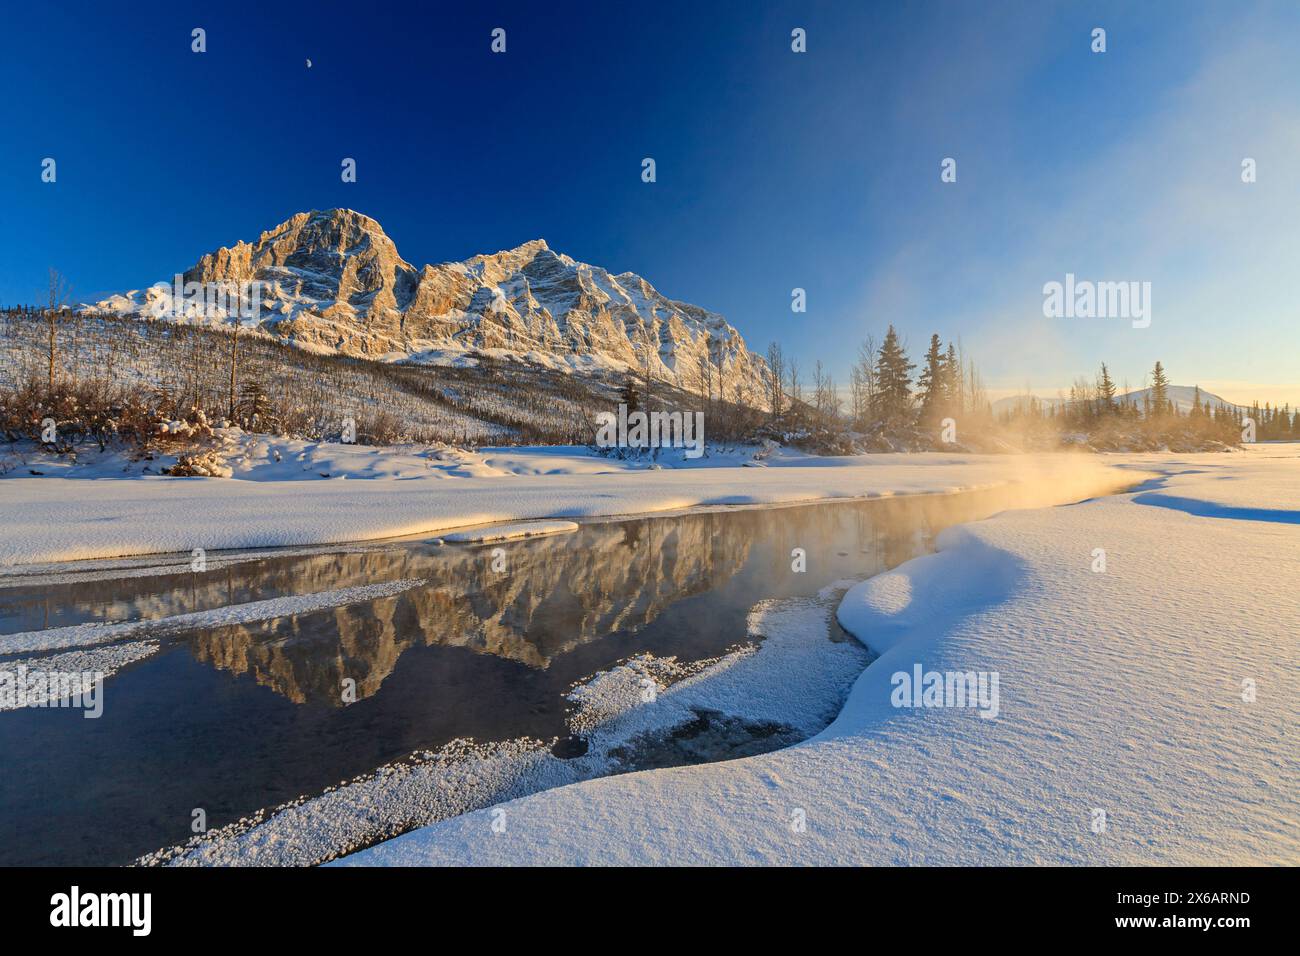 Reflet de montagnes dans une rivière au coucher du soleil, hiver, Arctique, Brooks Range, Alaska, ÉTATS-UNIS Banque D'Images